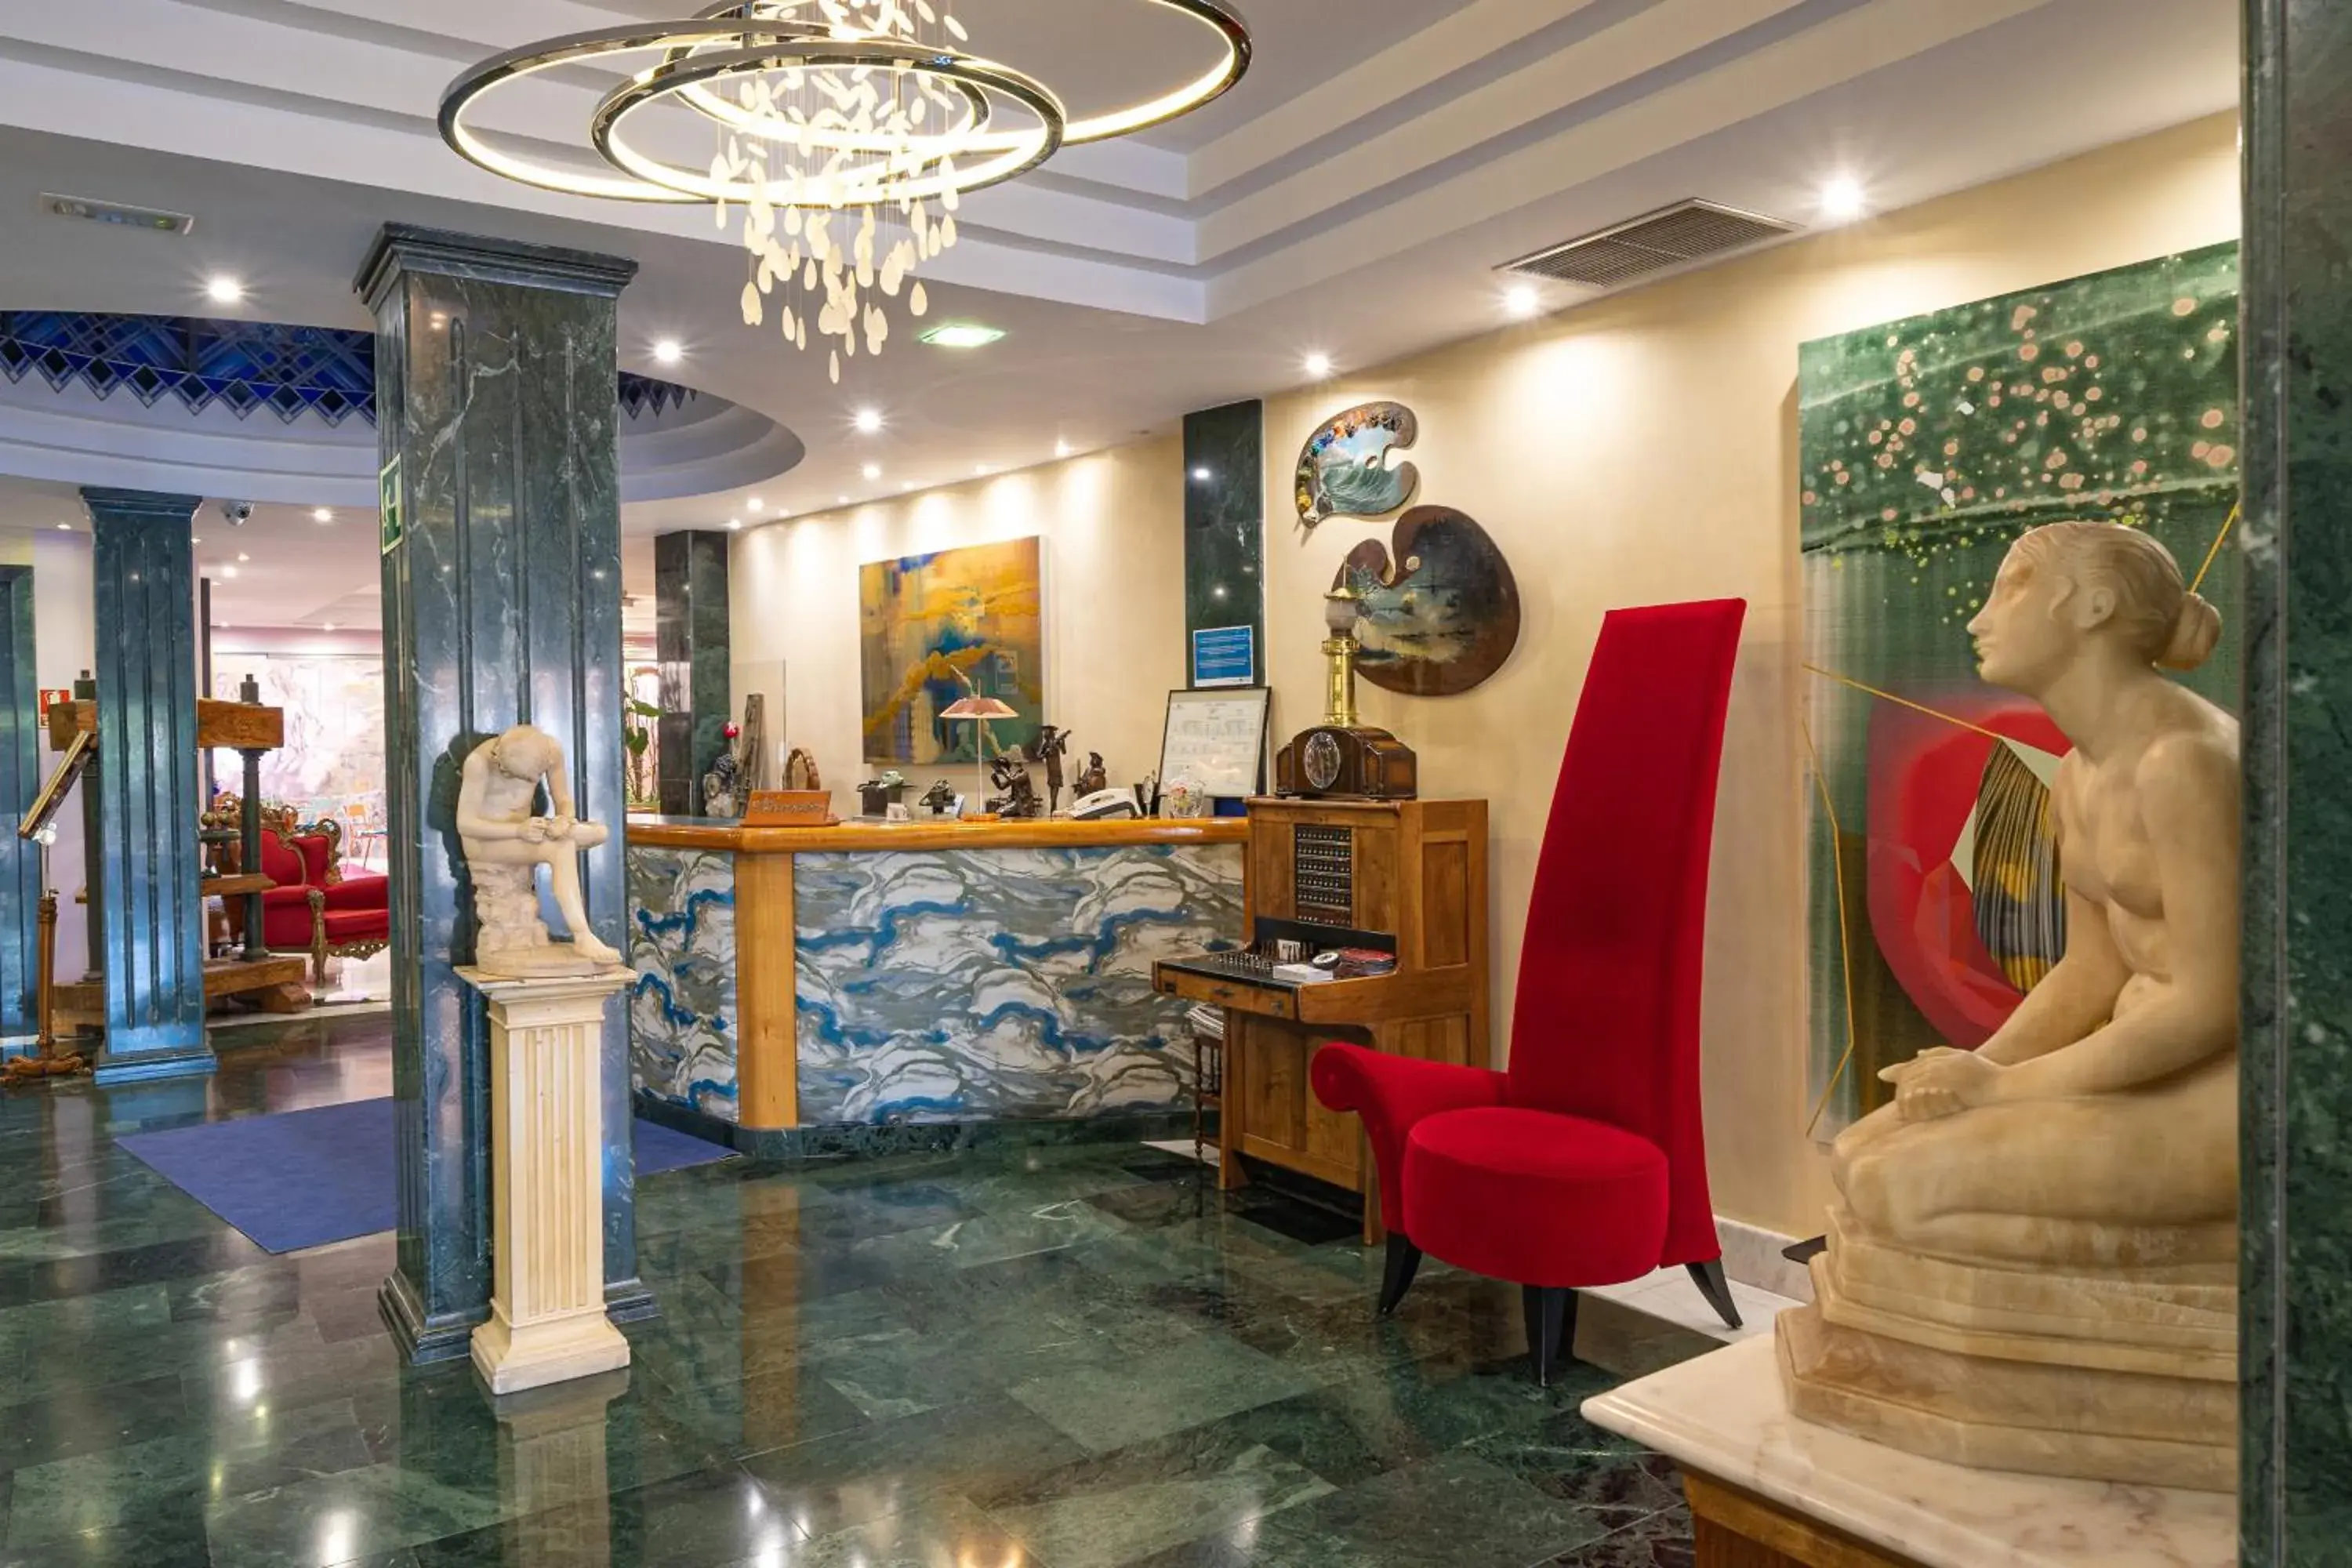 Lobby or reception, Lobby/Reception in Hotel Sancho